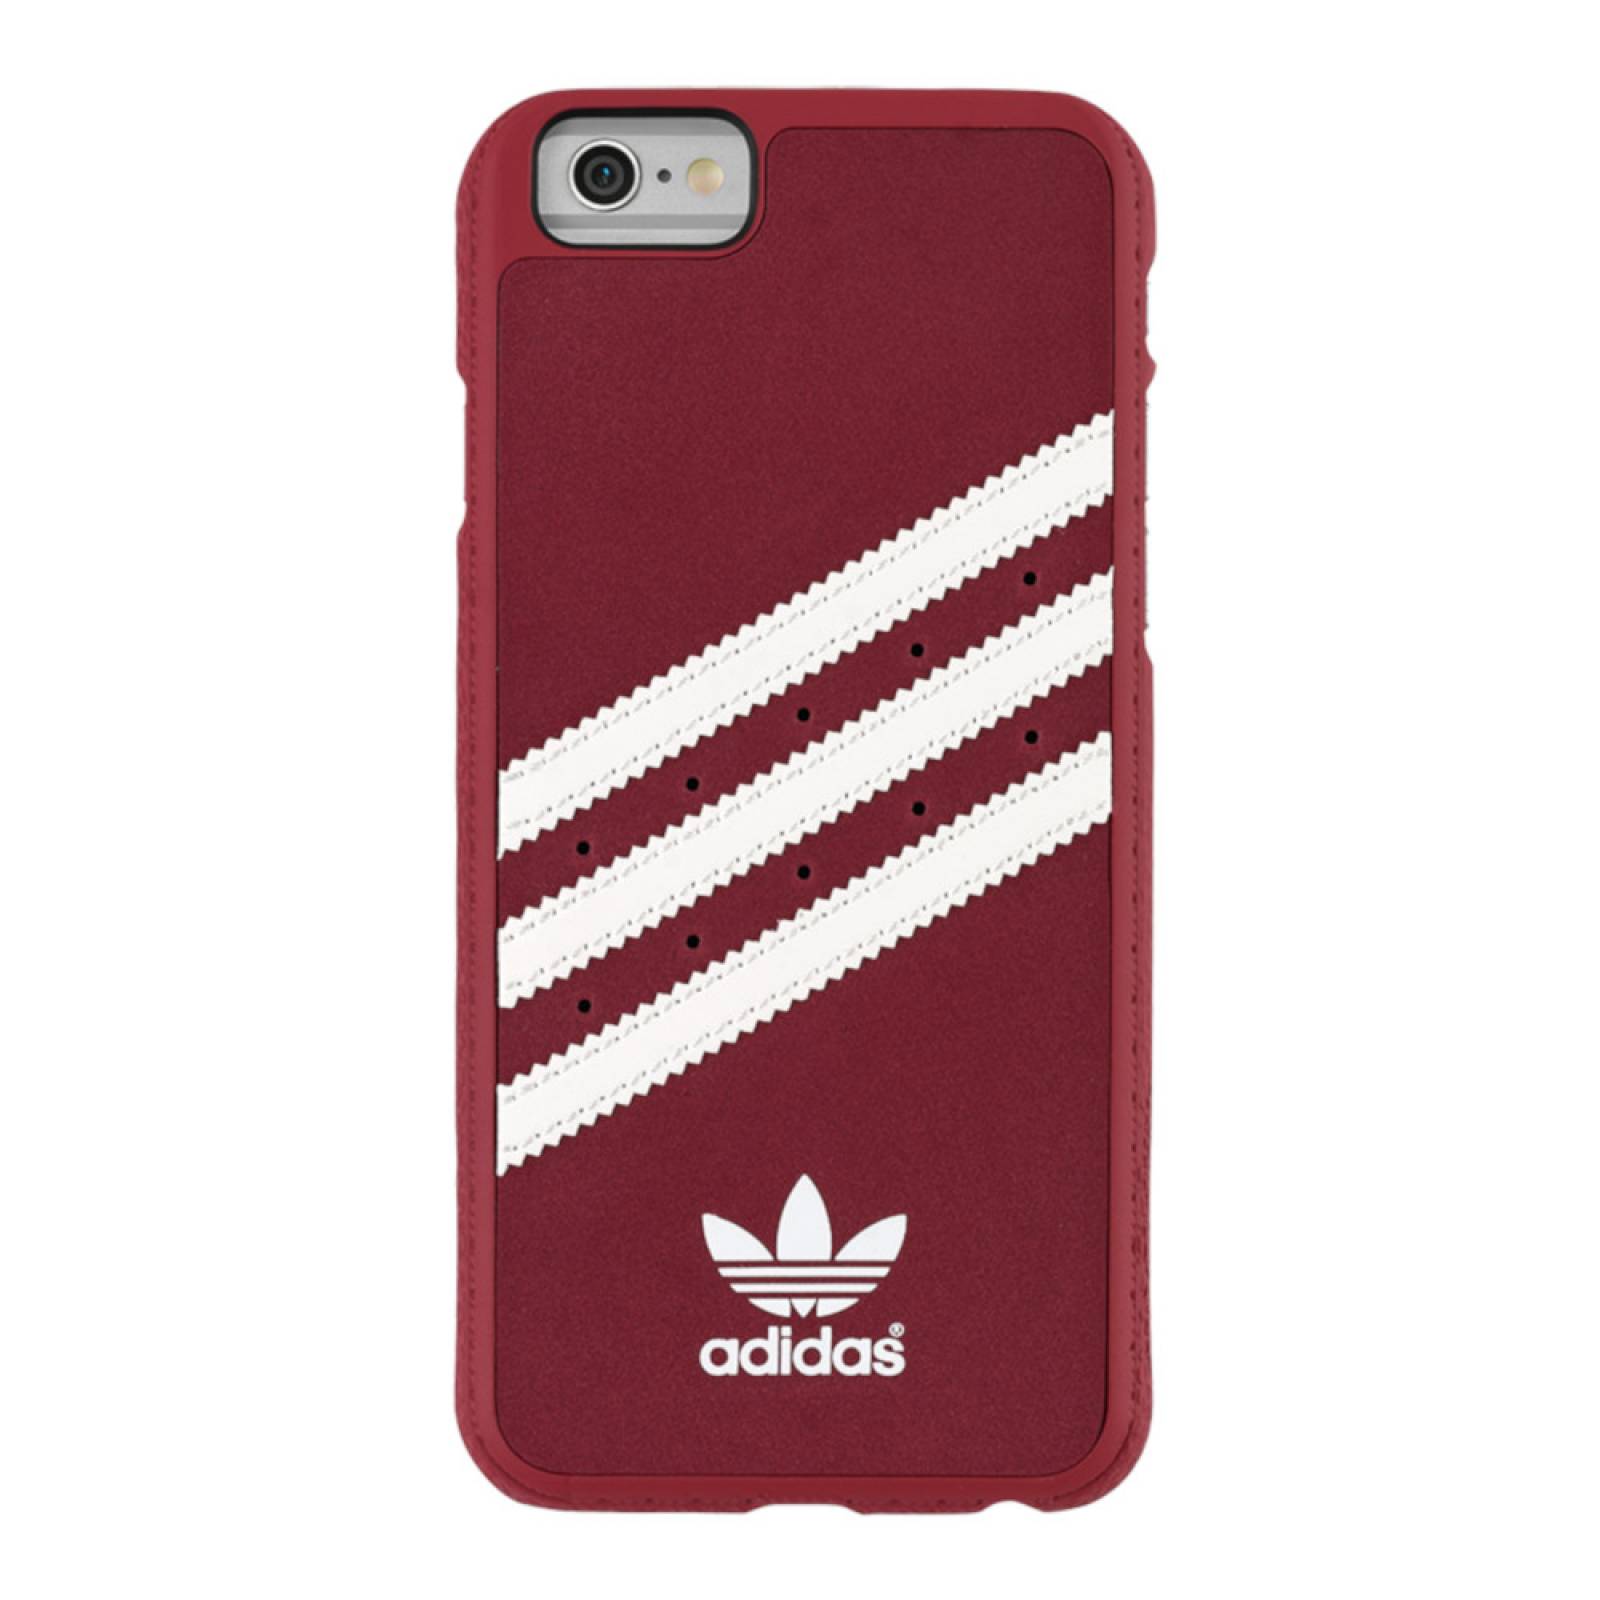 Funda Stripes Adidas Originals iPhone 6s, 6 Gamuza Rojo